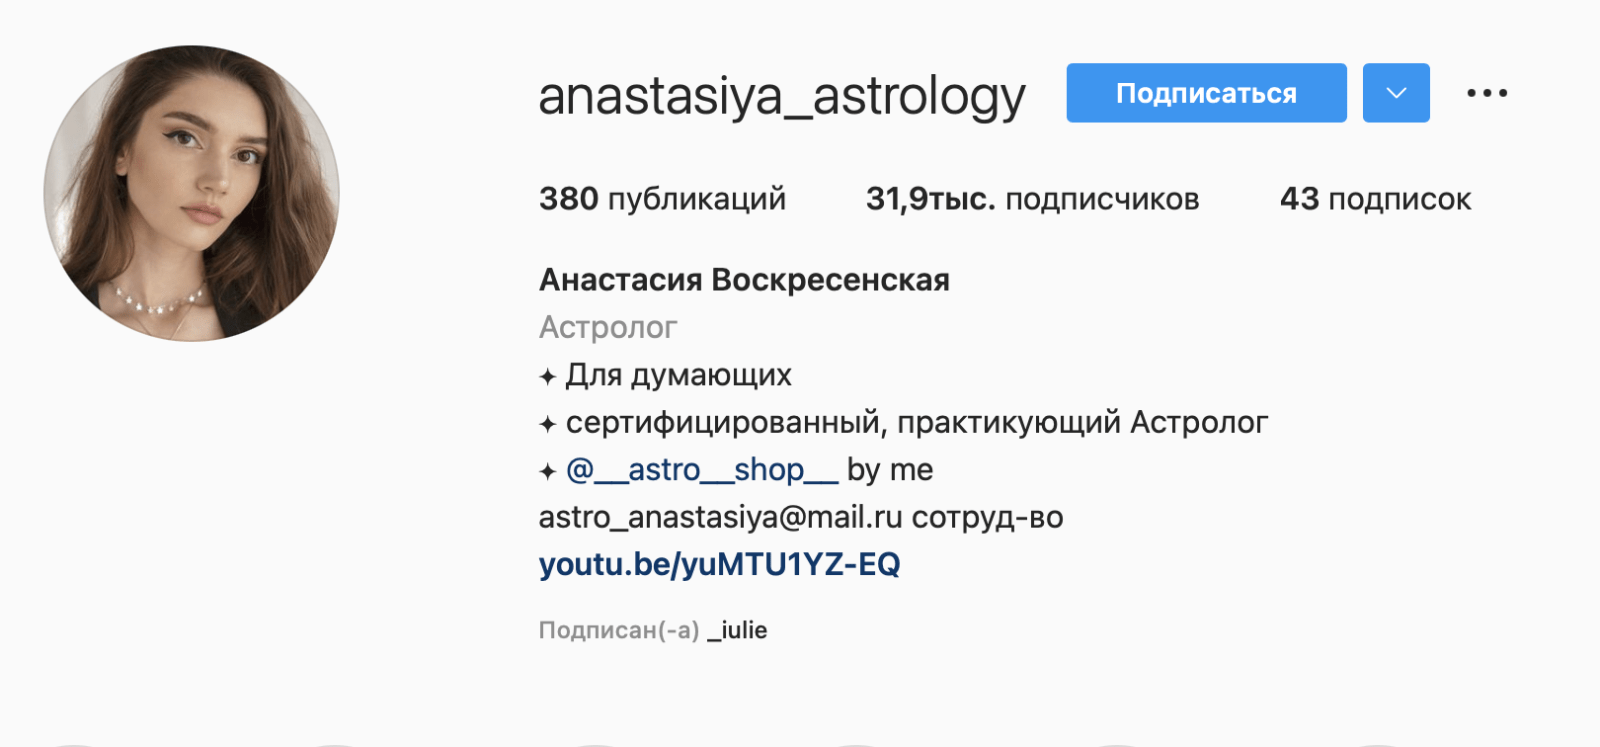 Анастасия Воскресенская астролог инстаграм